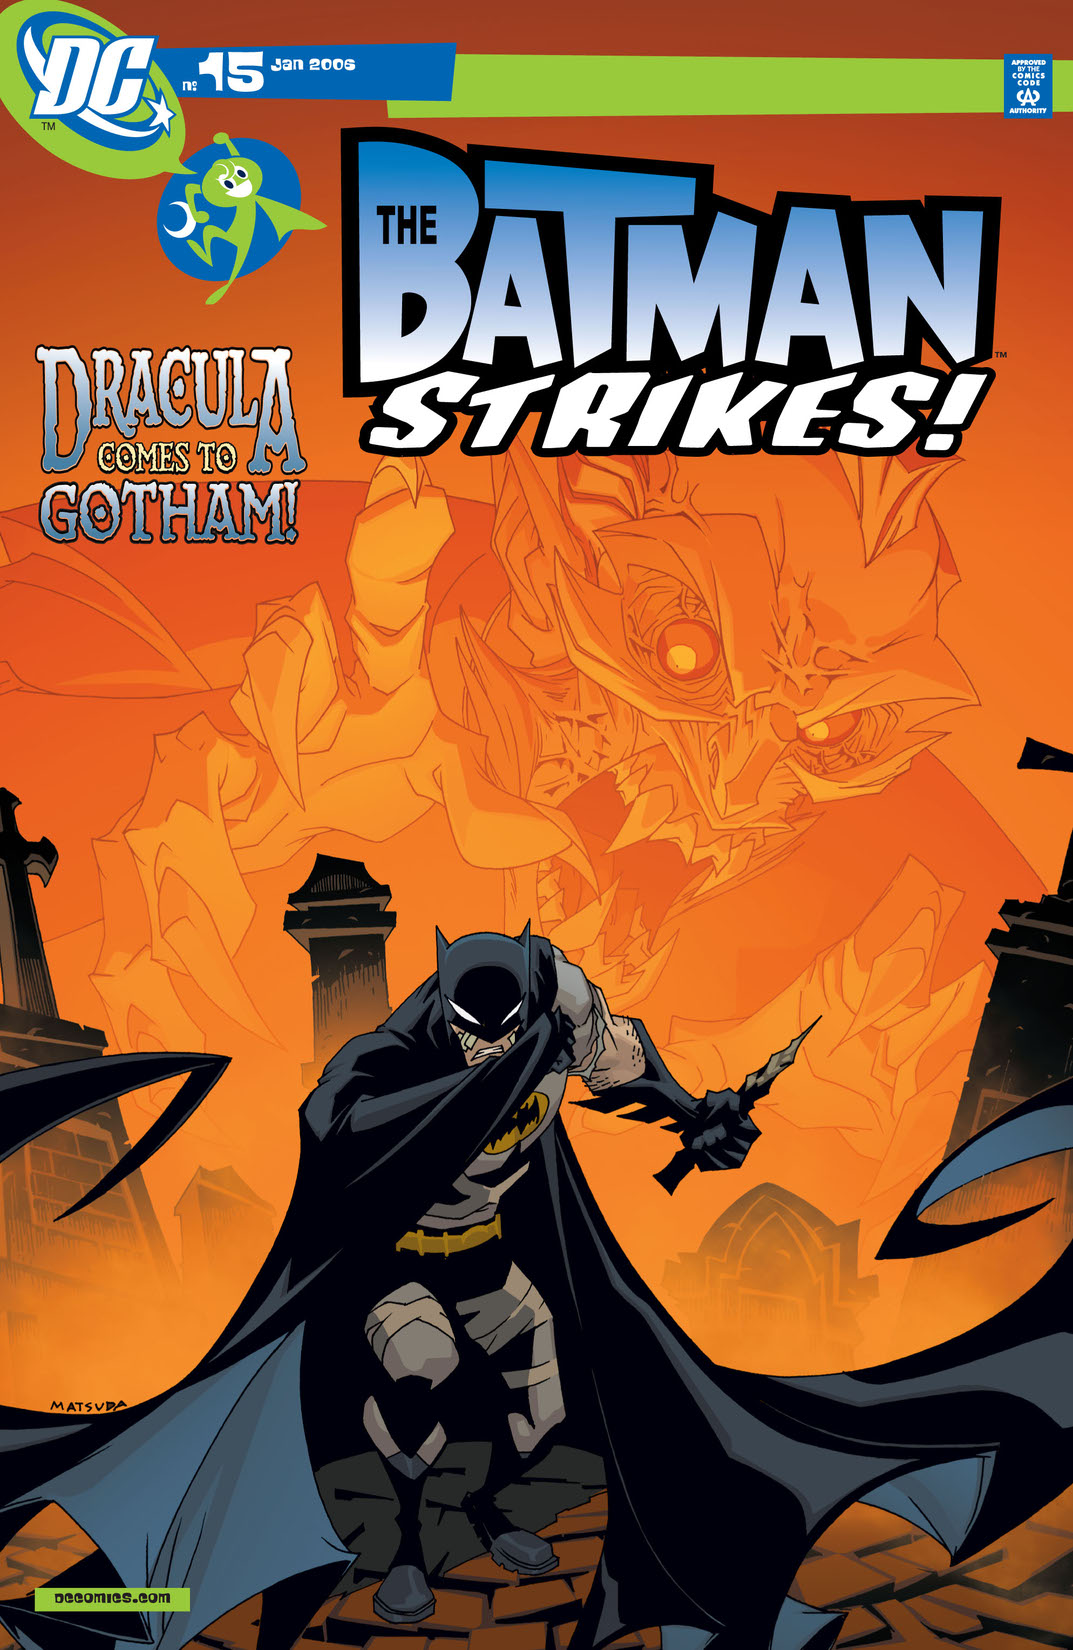 Batman Strikes! #15 preview images